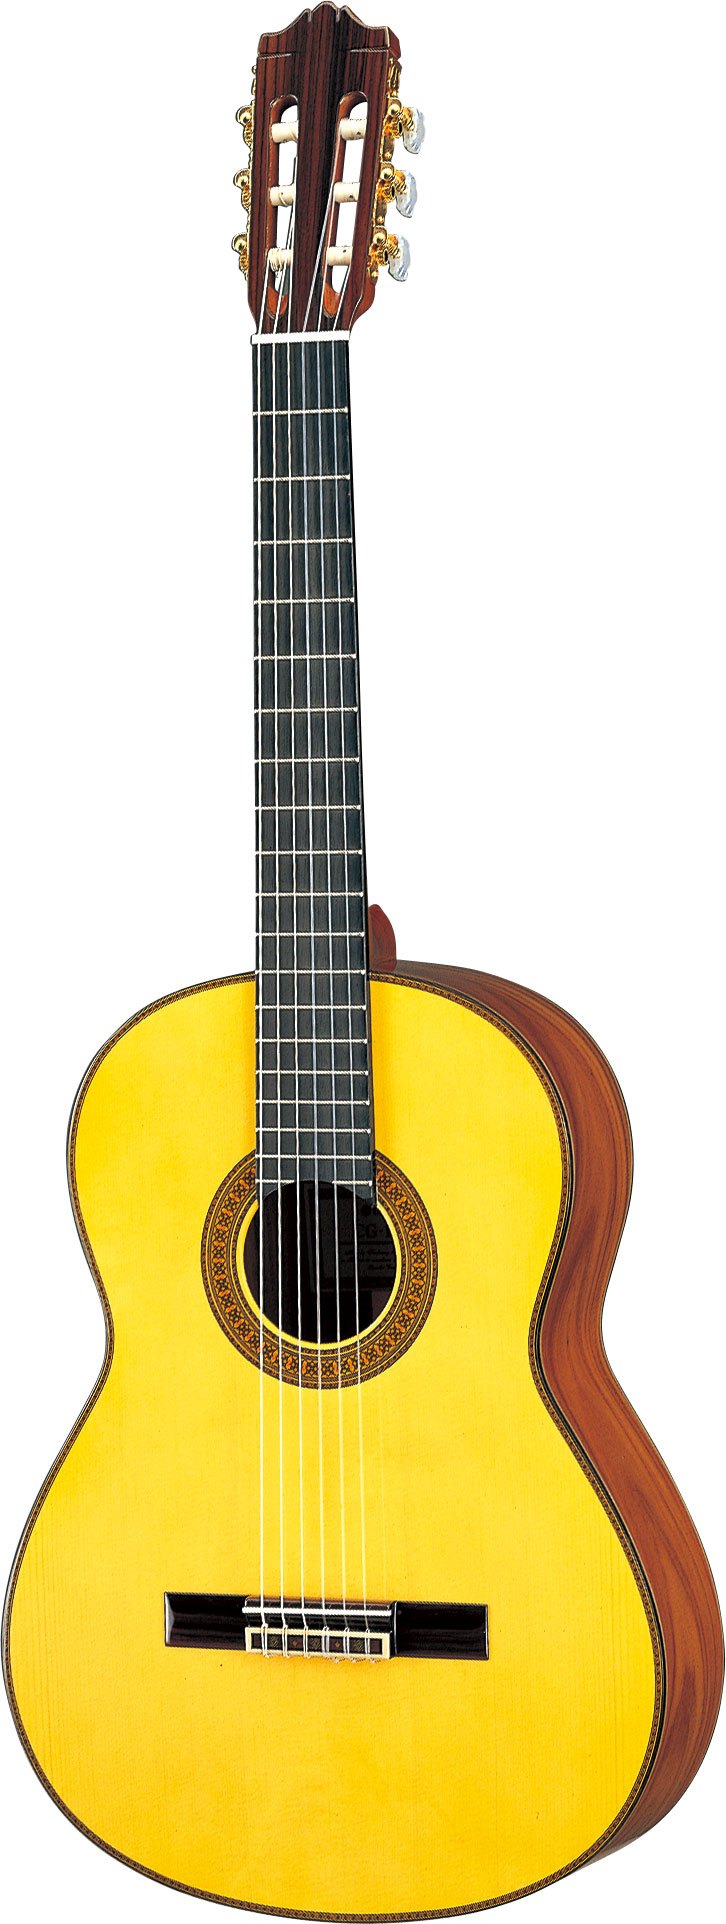 ヤマハ | CG171S - クラシックギター・ナイロン弦ギター - 概要